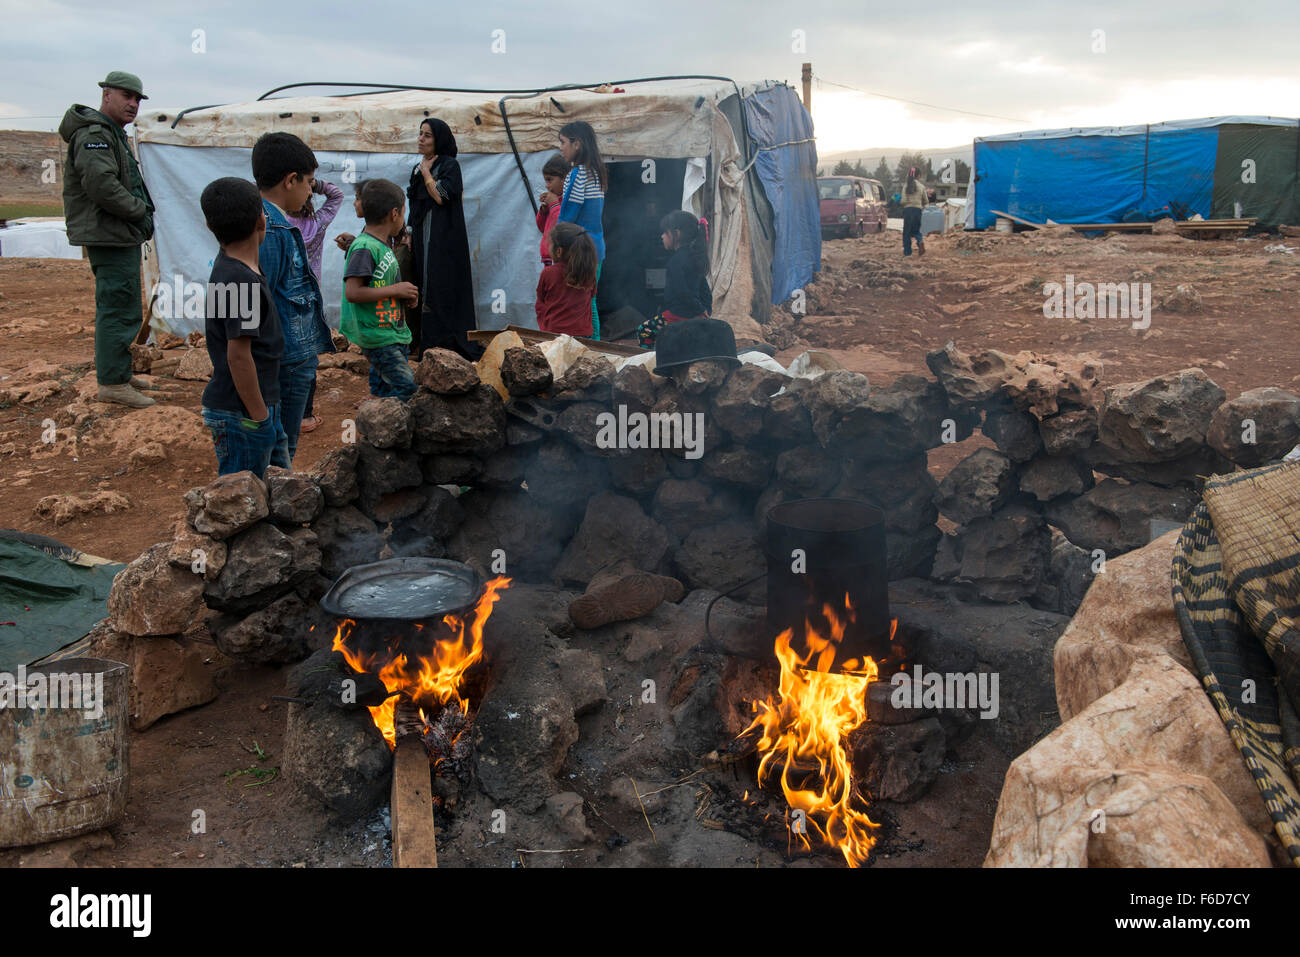 Valle de Beqaa Líbano, Deir el Ahmad, campamento de refugiados sirios, cocina exterior con fuego abierto Foto de stock